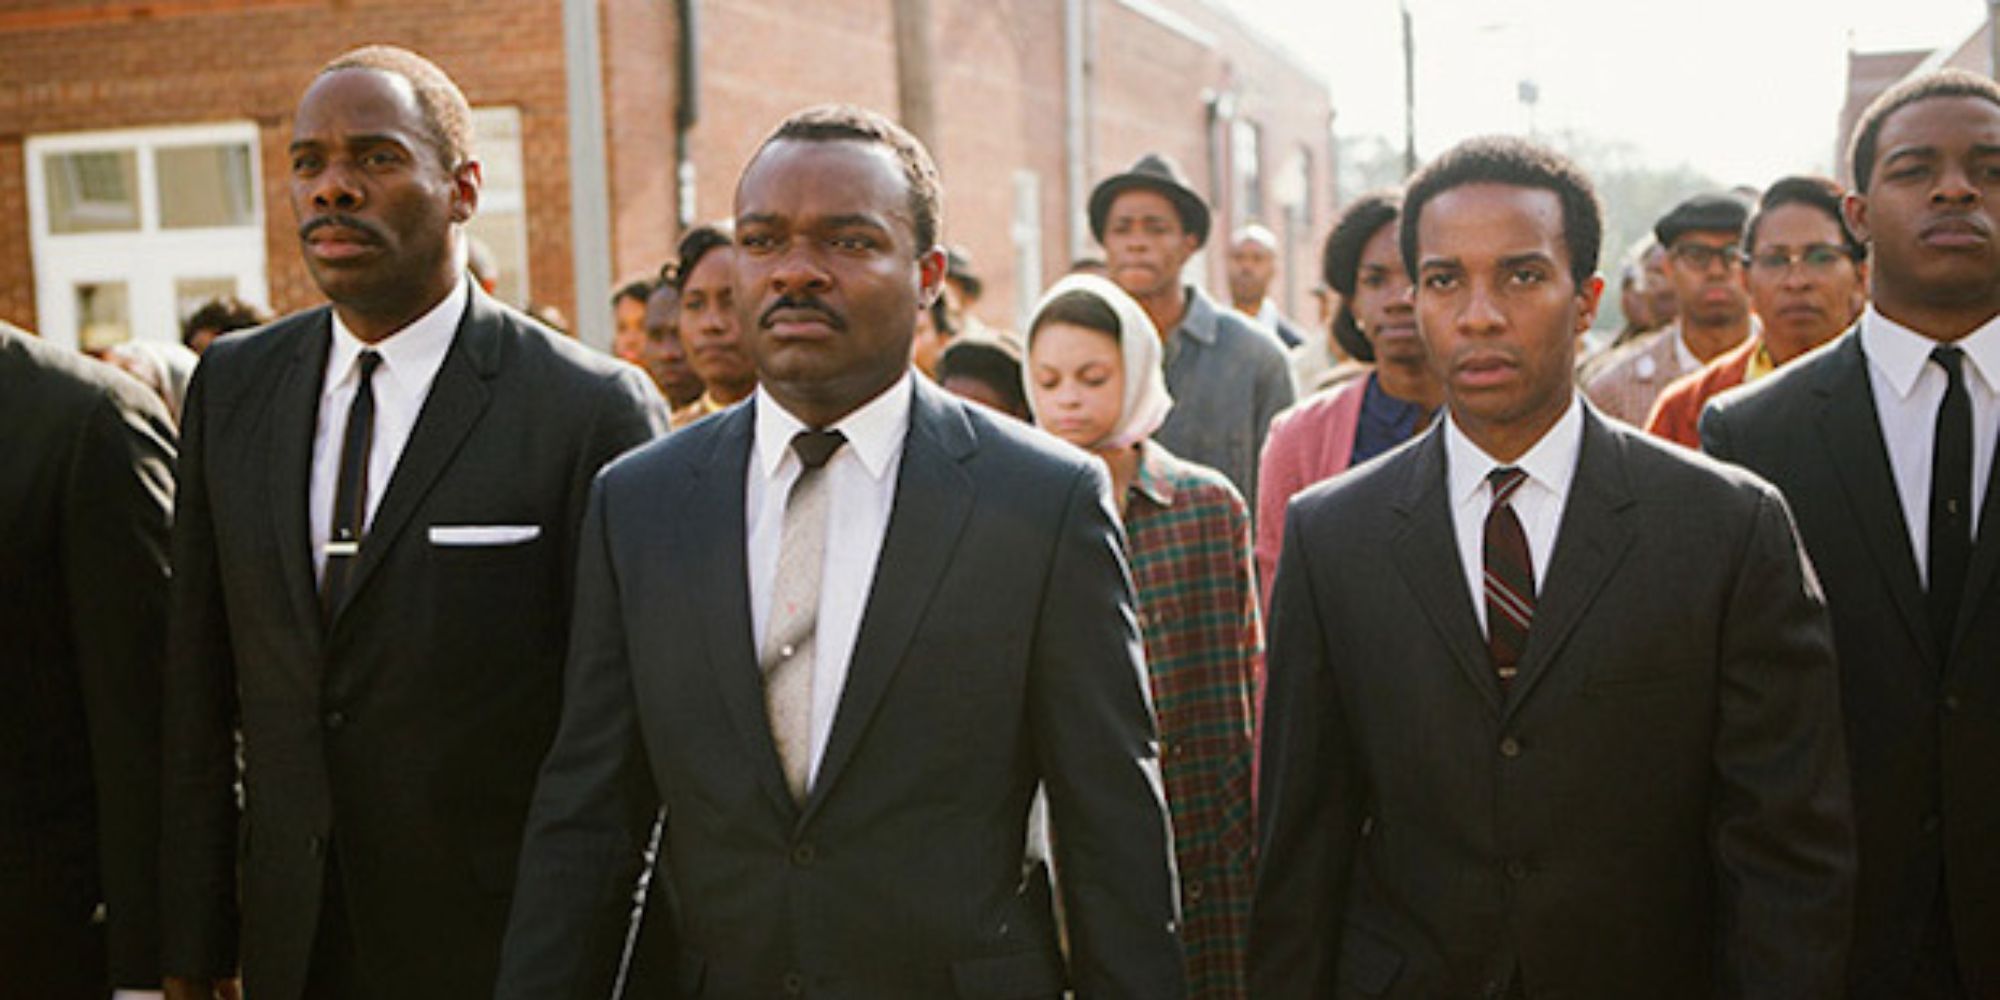 David Oyelowo and the cast of Selma in Selma